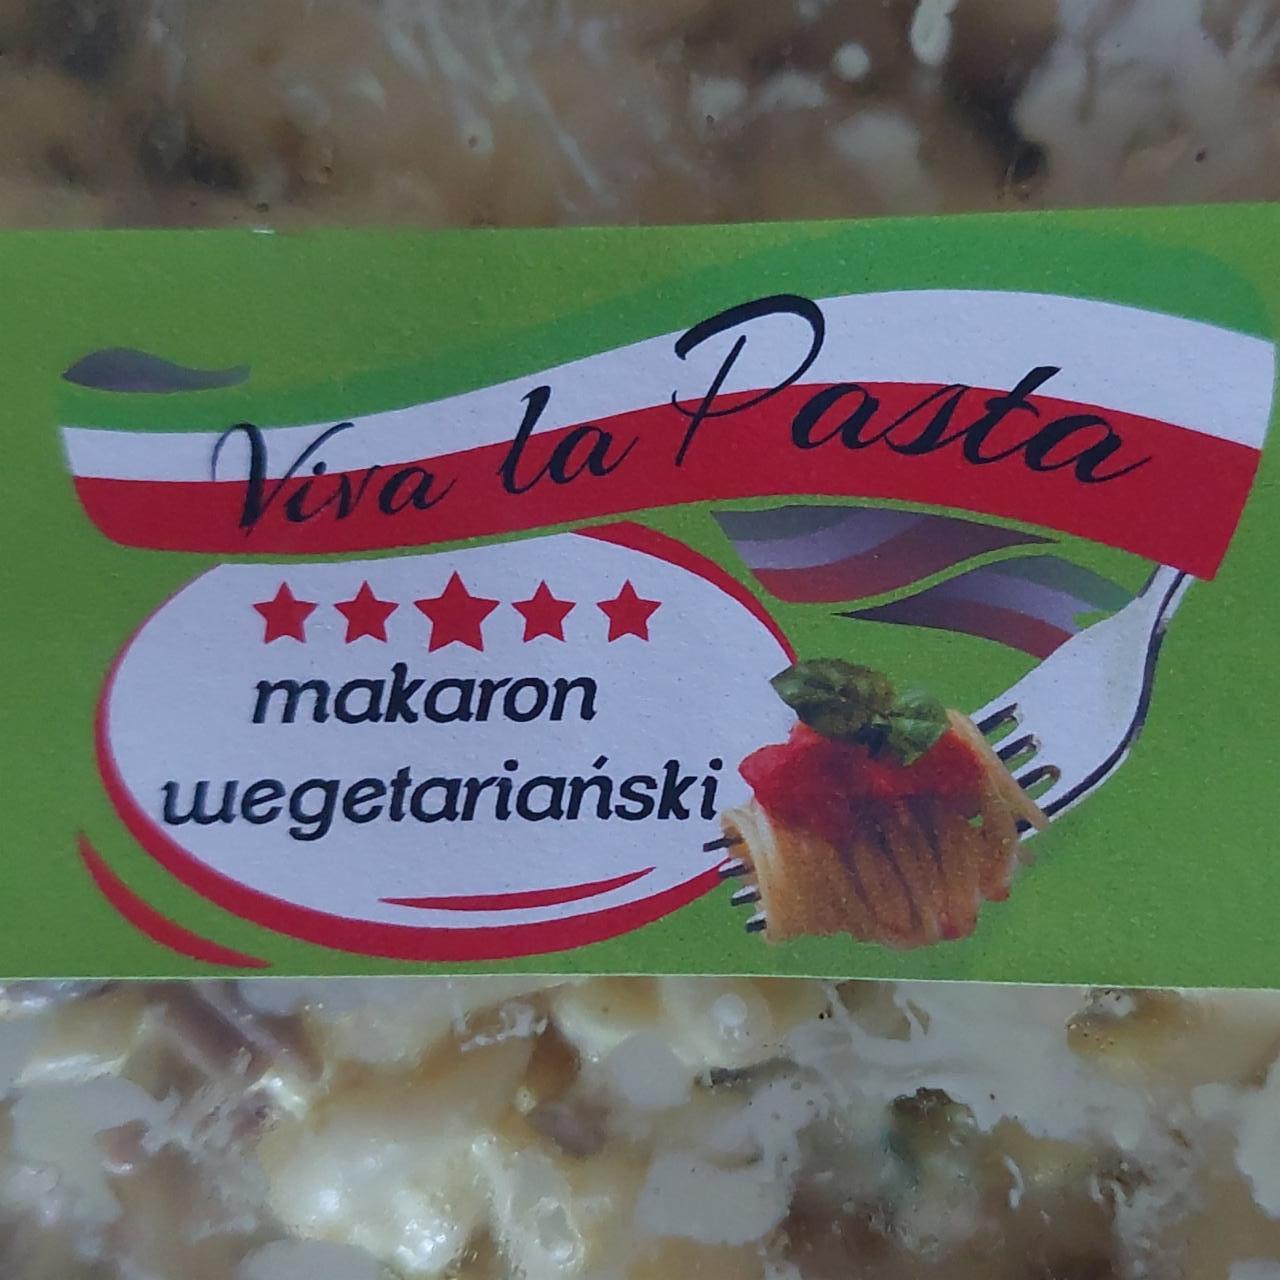 Zdjęcia - Makaron wegetariański Viva la pasta